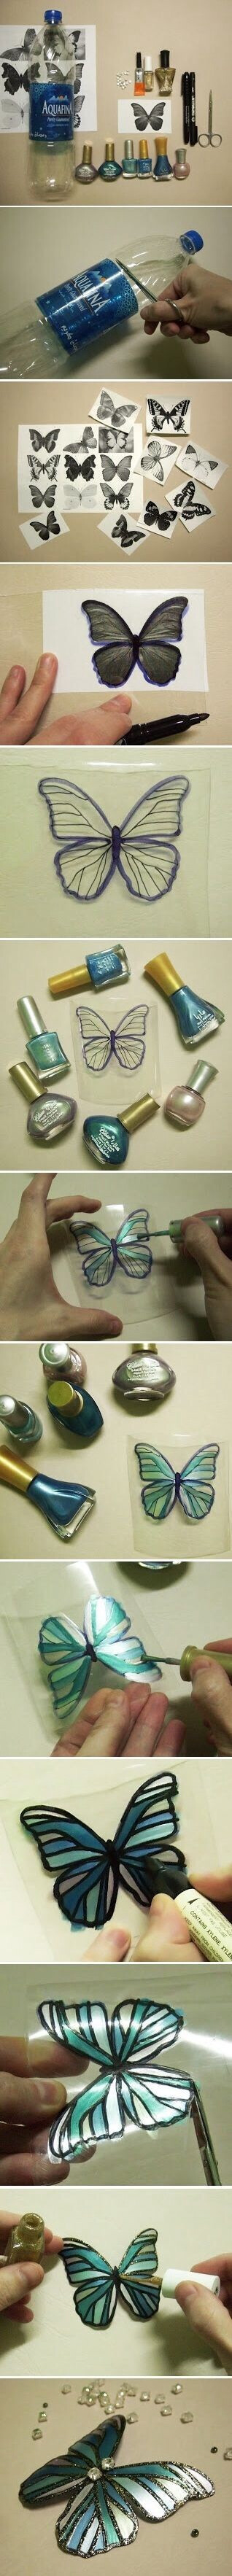 手工达人利用旧饮料瓶和指甲油制作蝴蝶的精彩创意